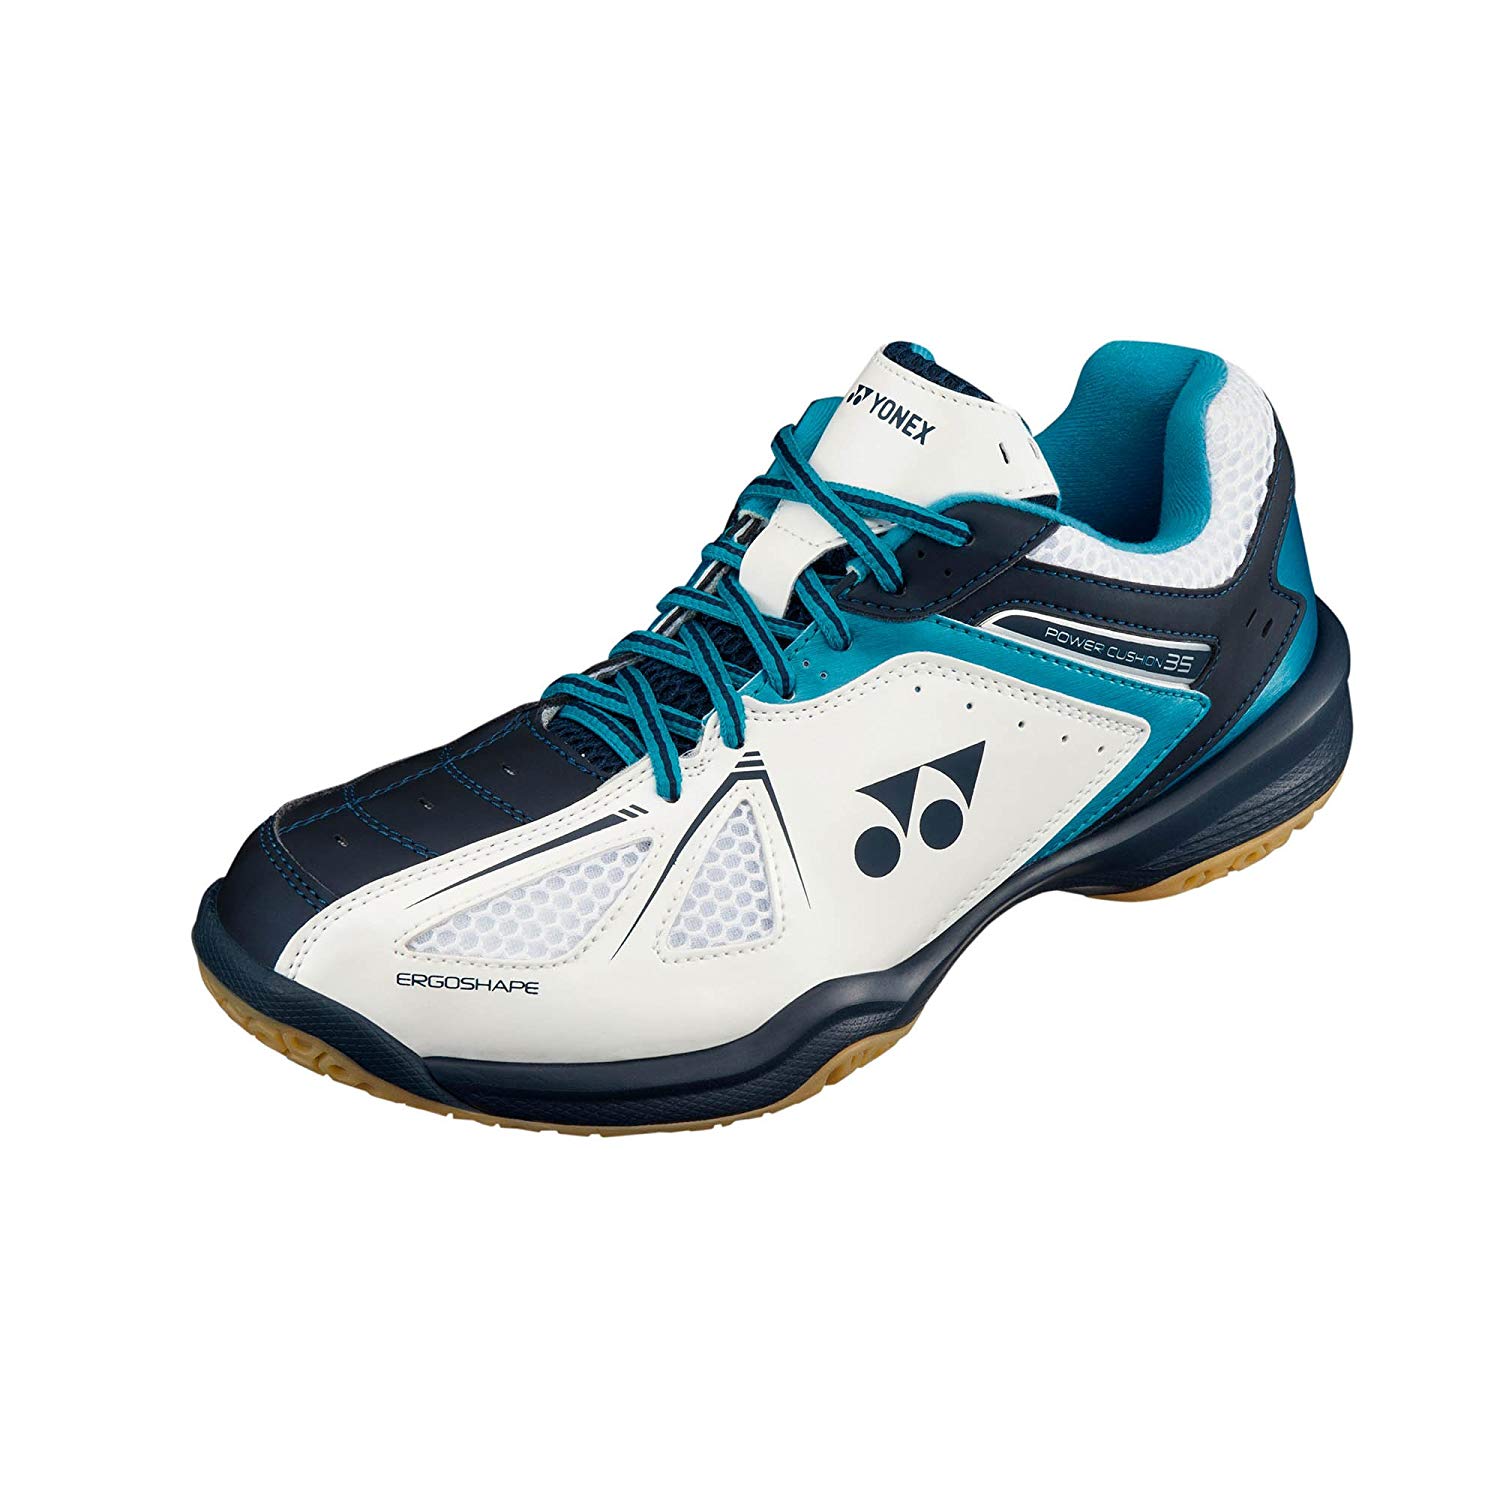 Yonex Men's Badminton Shoes | Size 9 - Big Value Shop